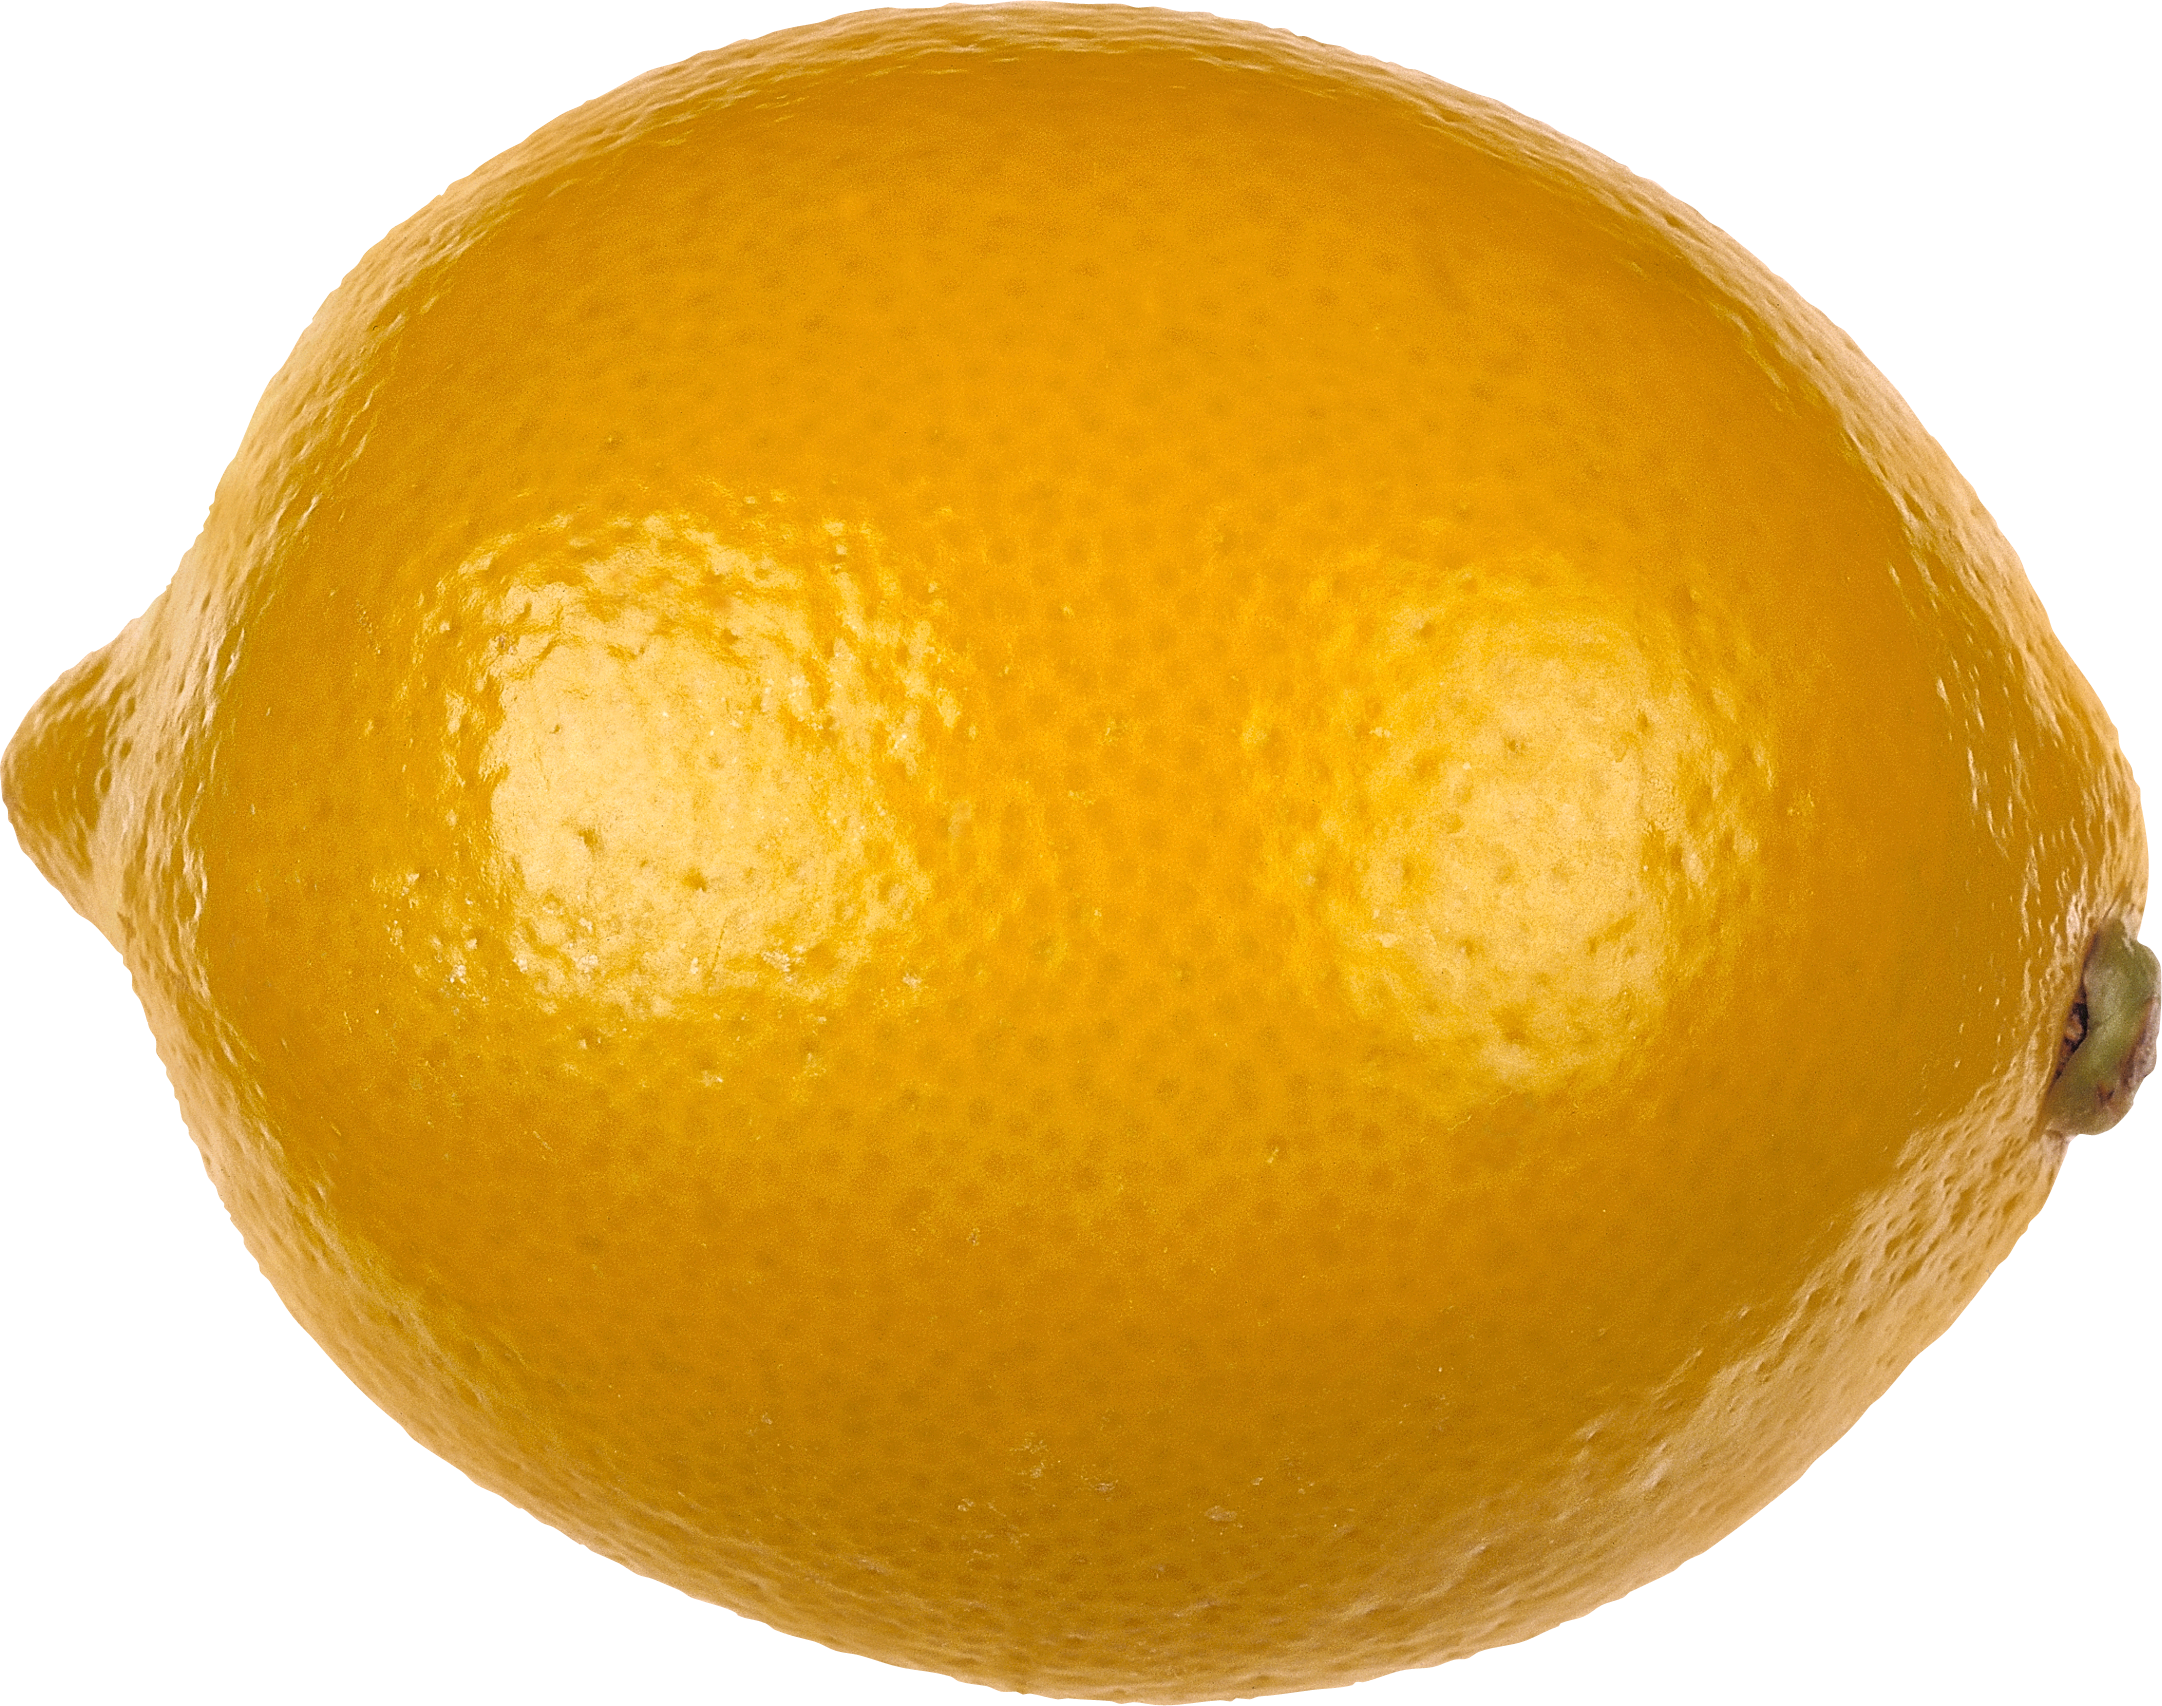 lemon clipart sour taste